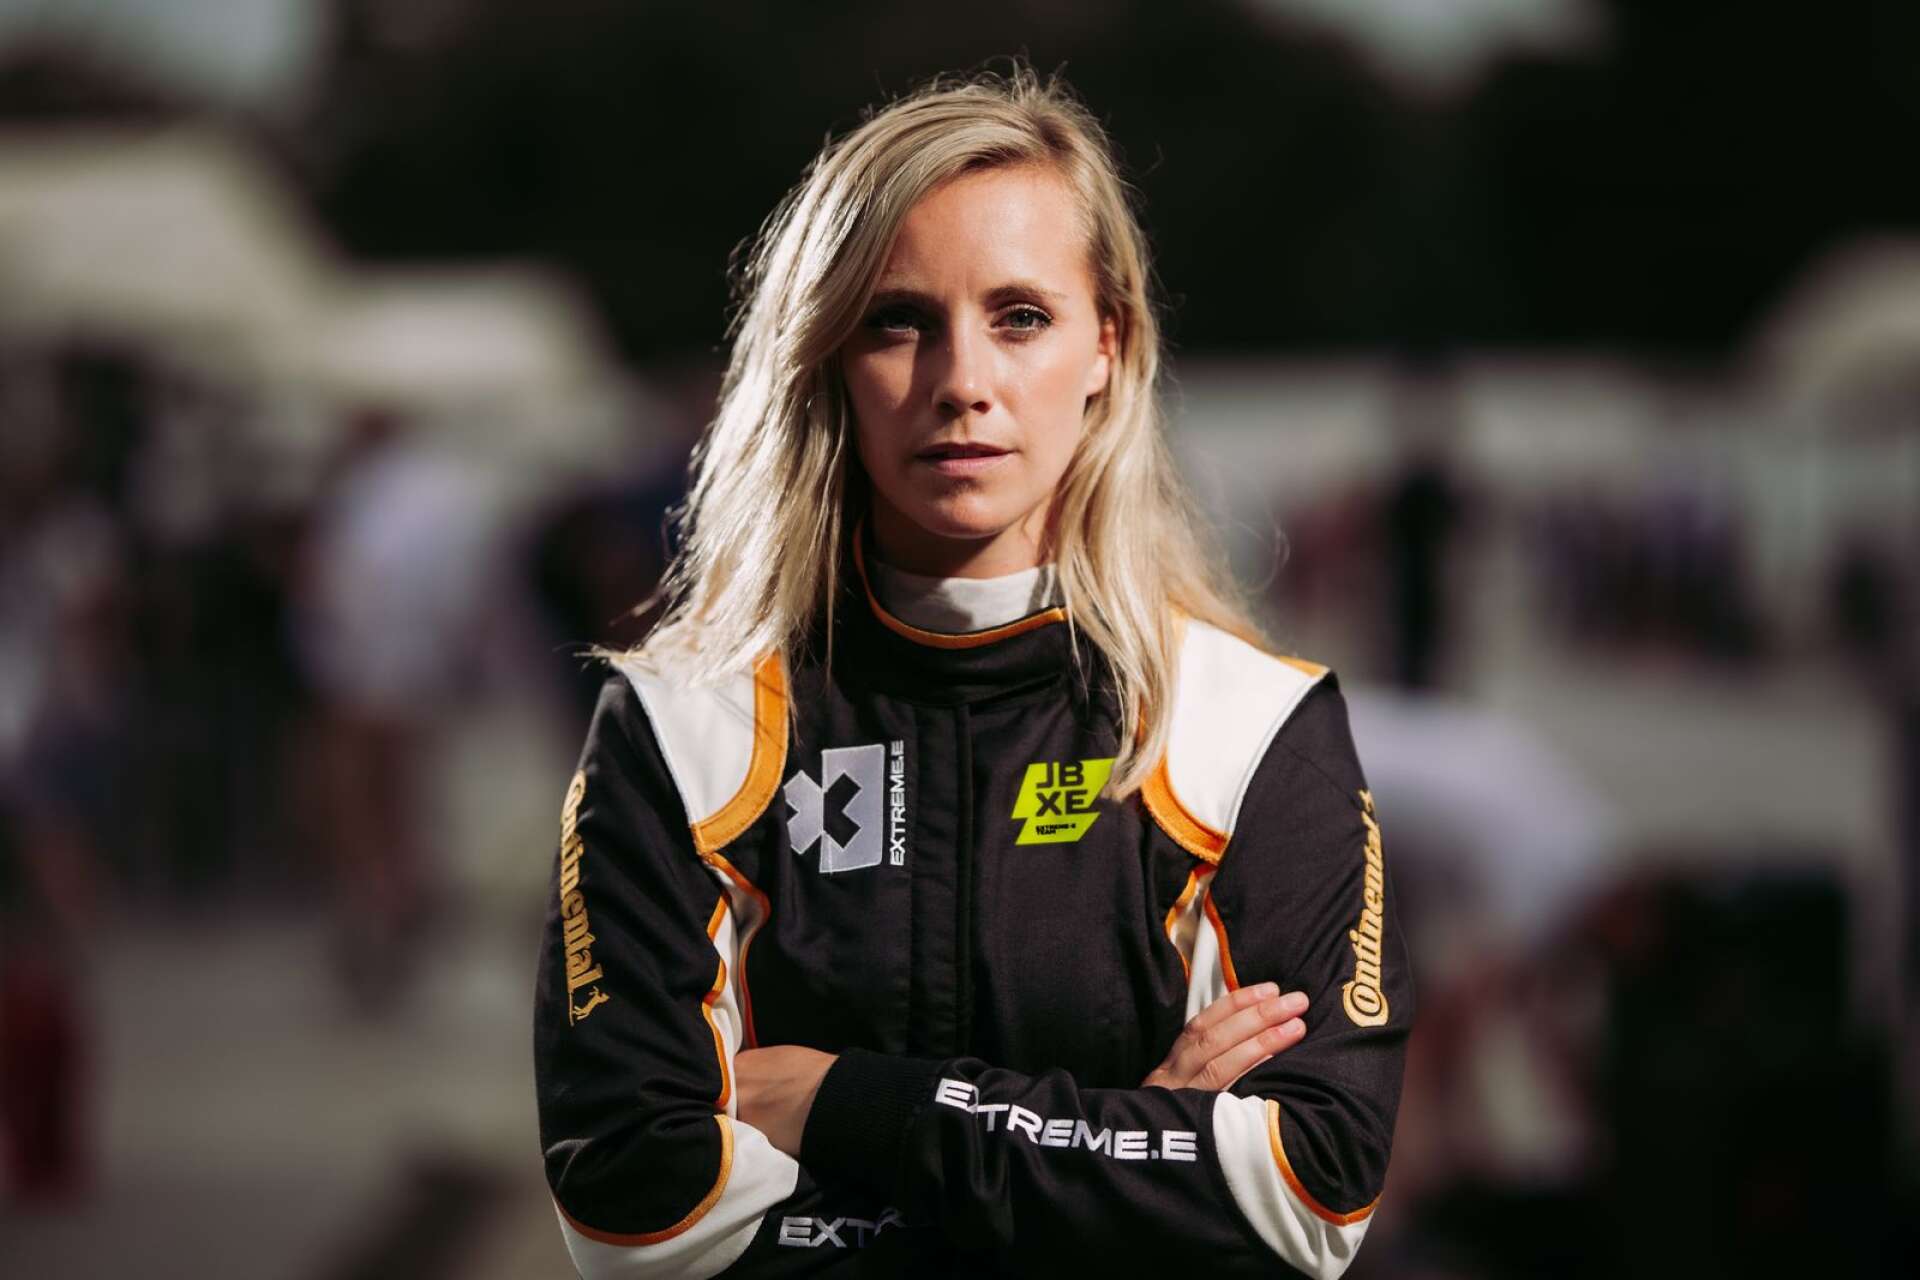 Mikaela Åhlin-Kottulinsky blickar mot premiären av Extreme E. För första gången i motorsportkarriären är hon avlönad förare.